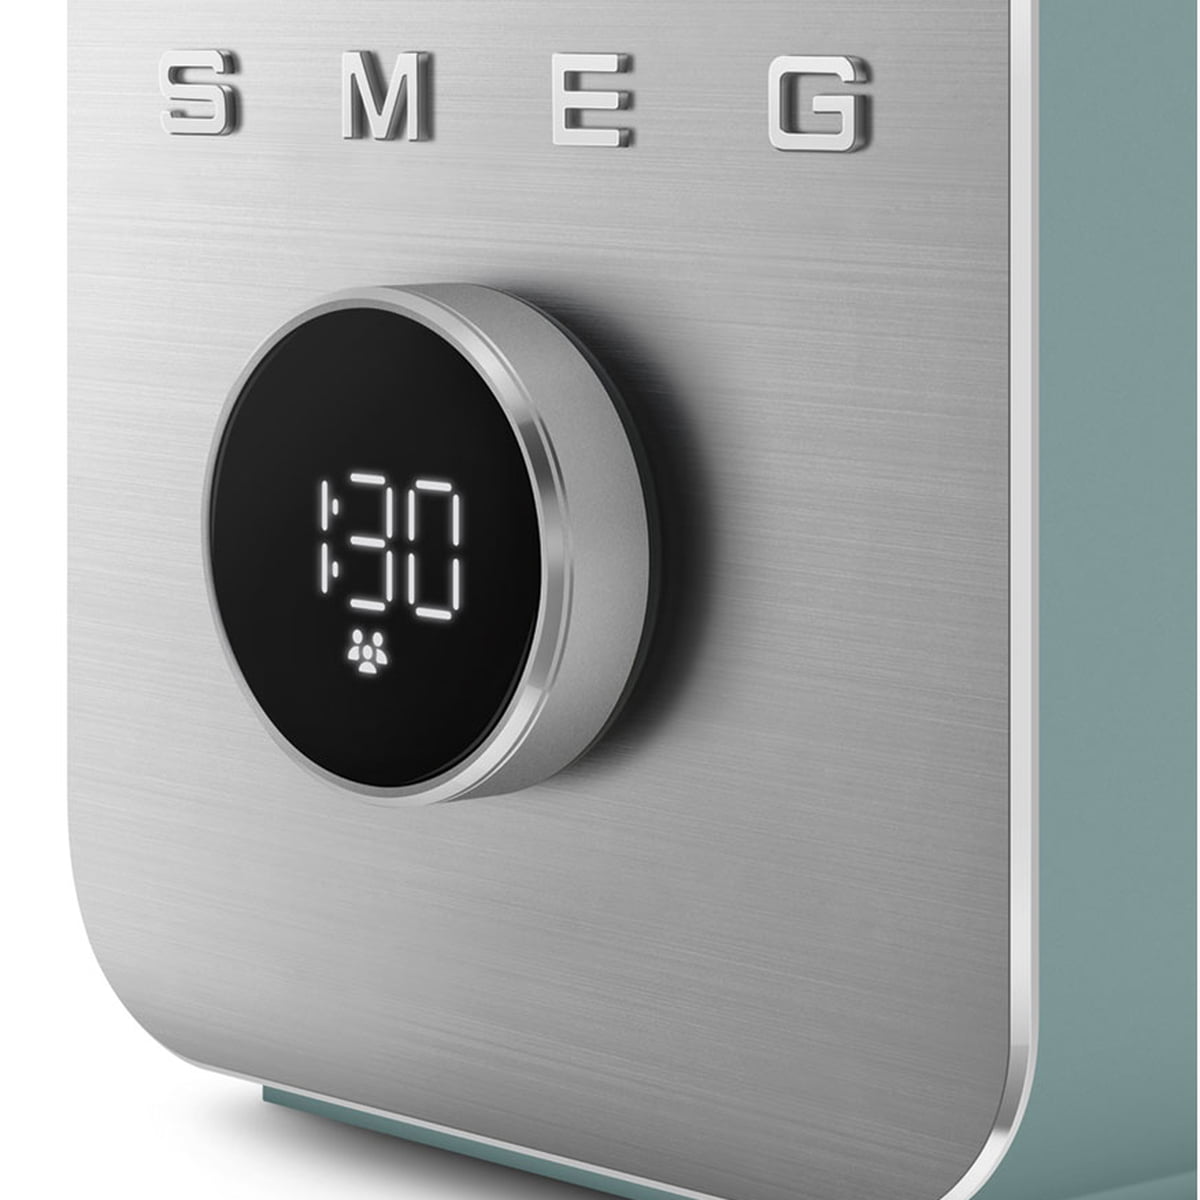 Smeg - High Performance Stand Mixer BLC02